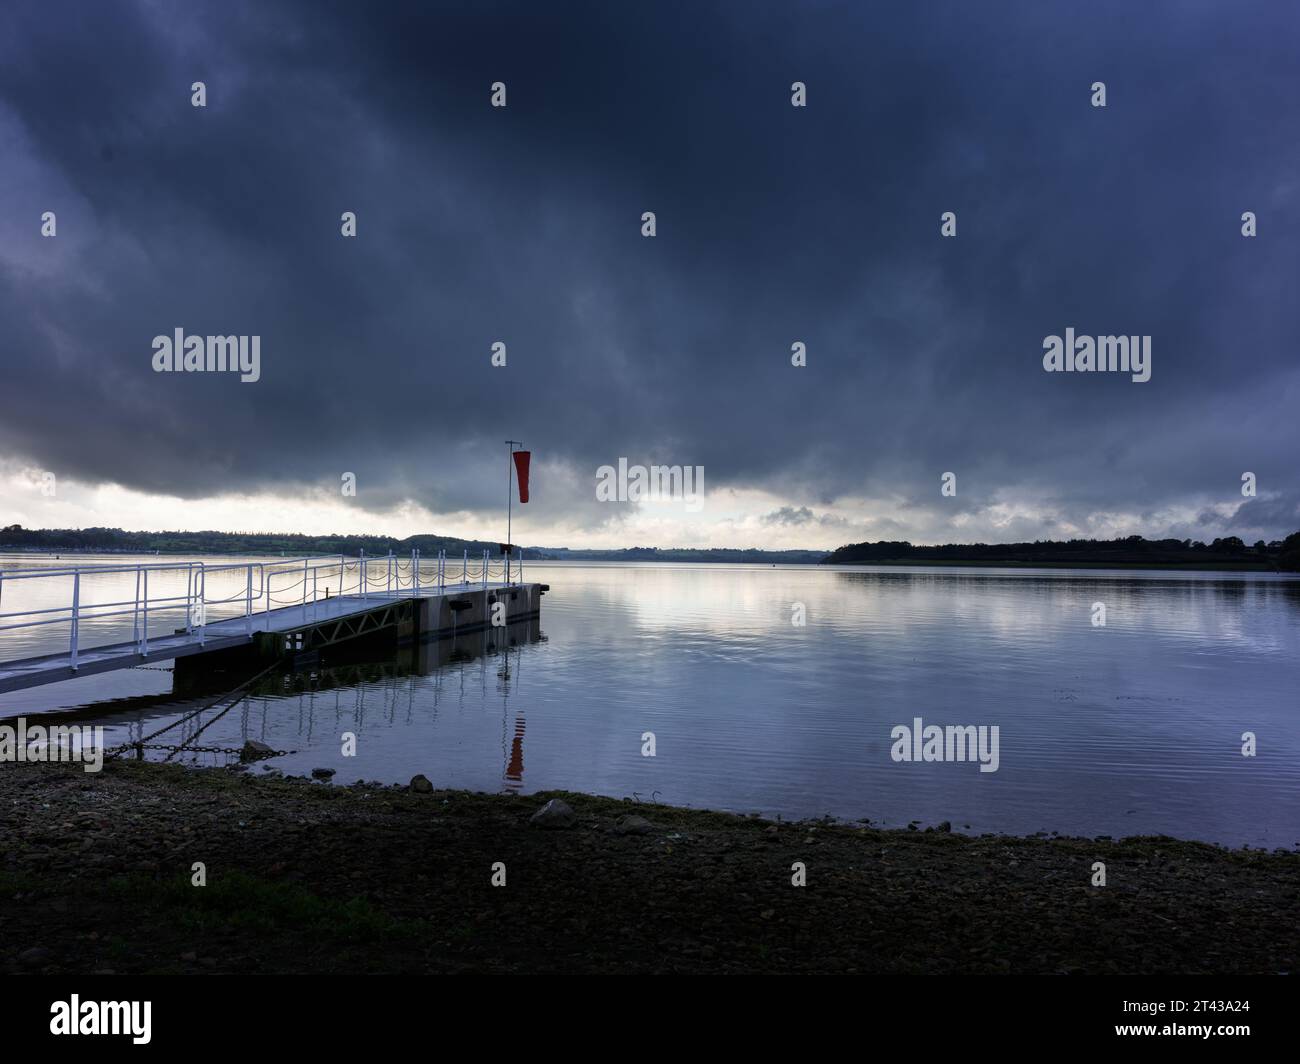 Nuvola chiara e scura su un molo in riva al lago in una giornata tranquilla. Foto Stock